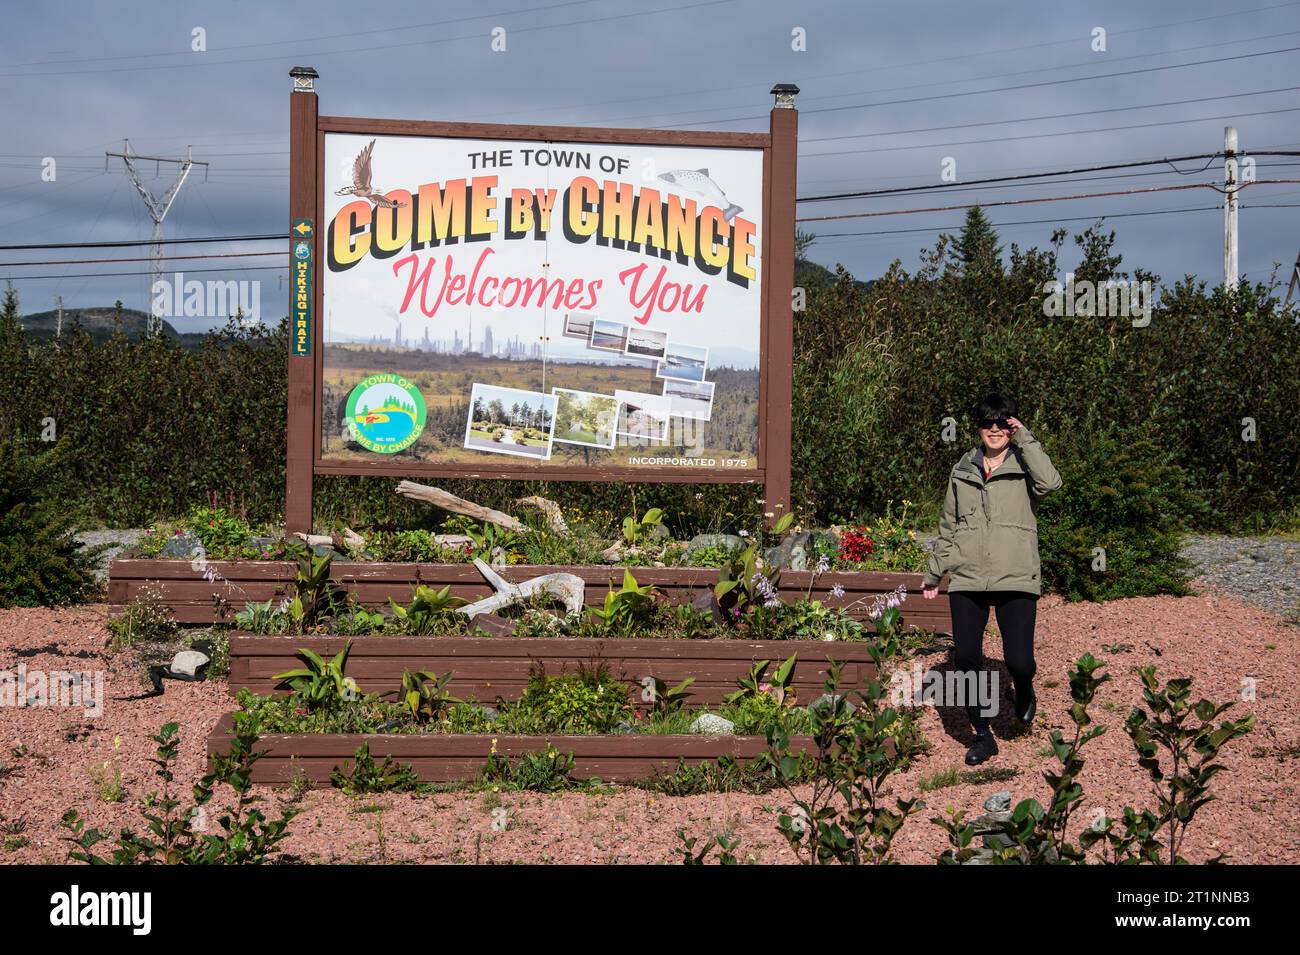 Benvenuto al cartello "come by Chance" di Newfoundland & Labrador, Canada Foto Stock